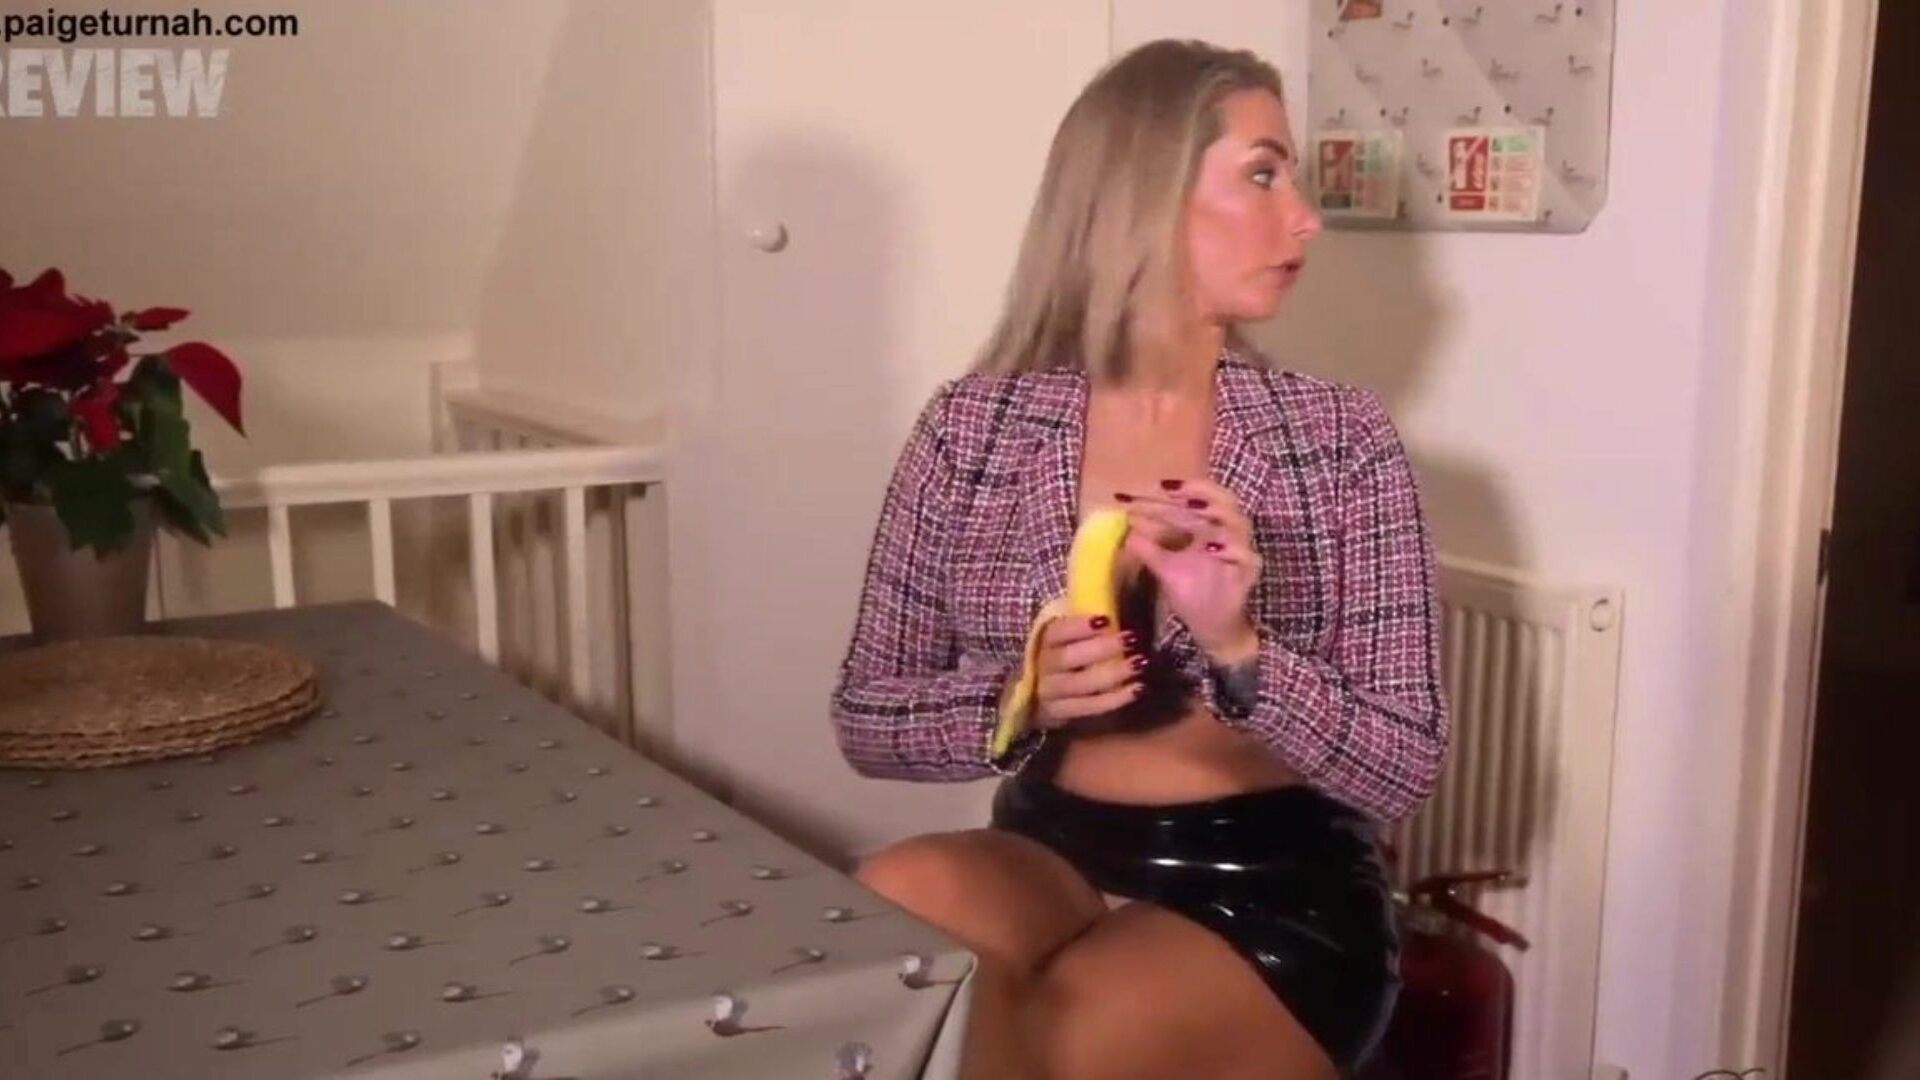 תינוק בריטי פייג 'טורנה הוא בהפסקת הצהריים שלה ומתגרה בך עם בננה שלה שירות אוראלי וניקוזים שסועים